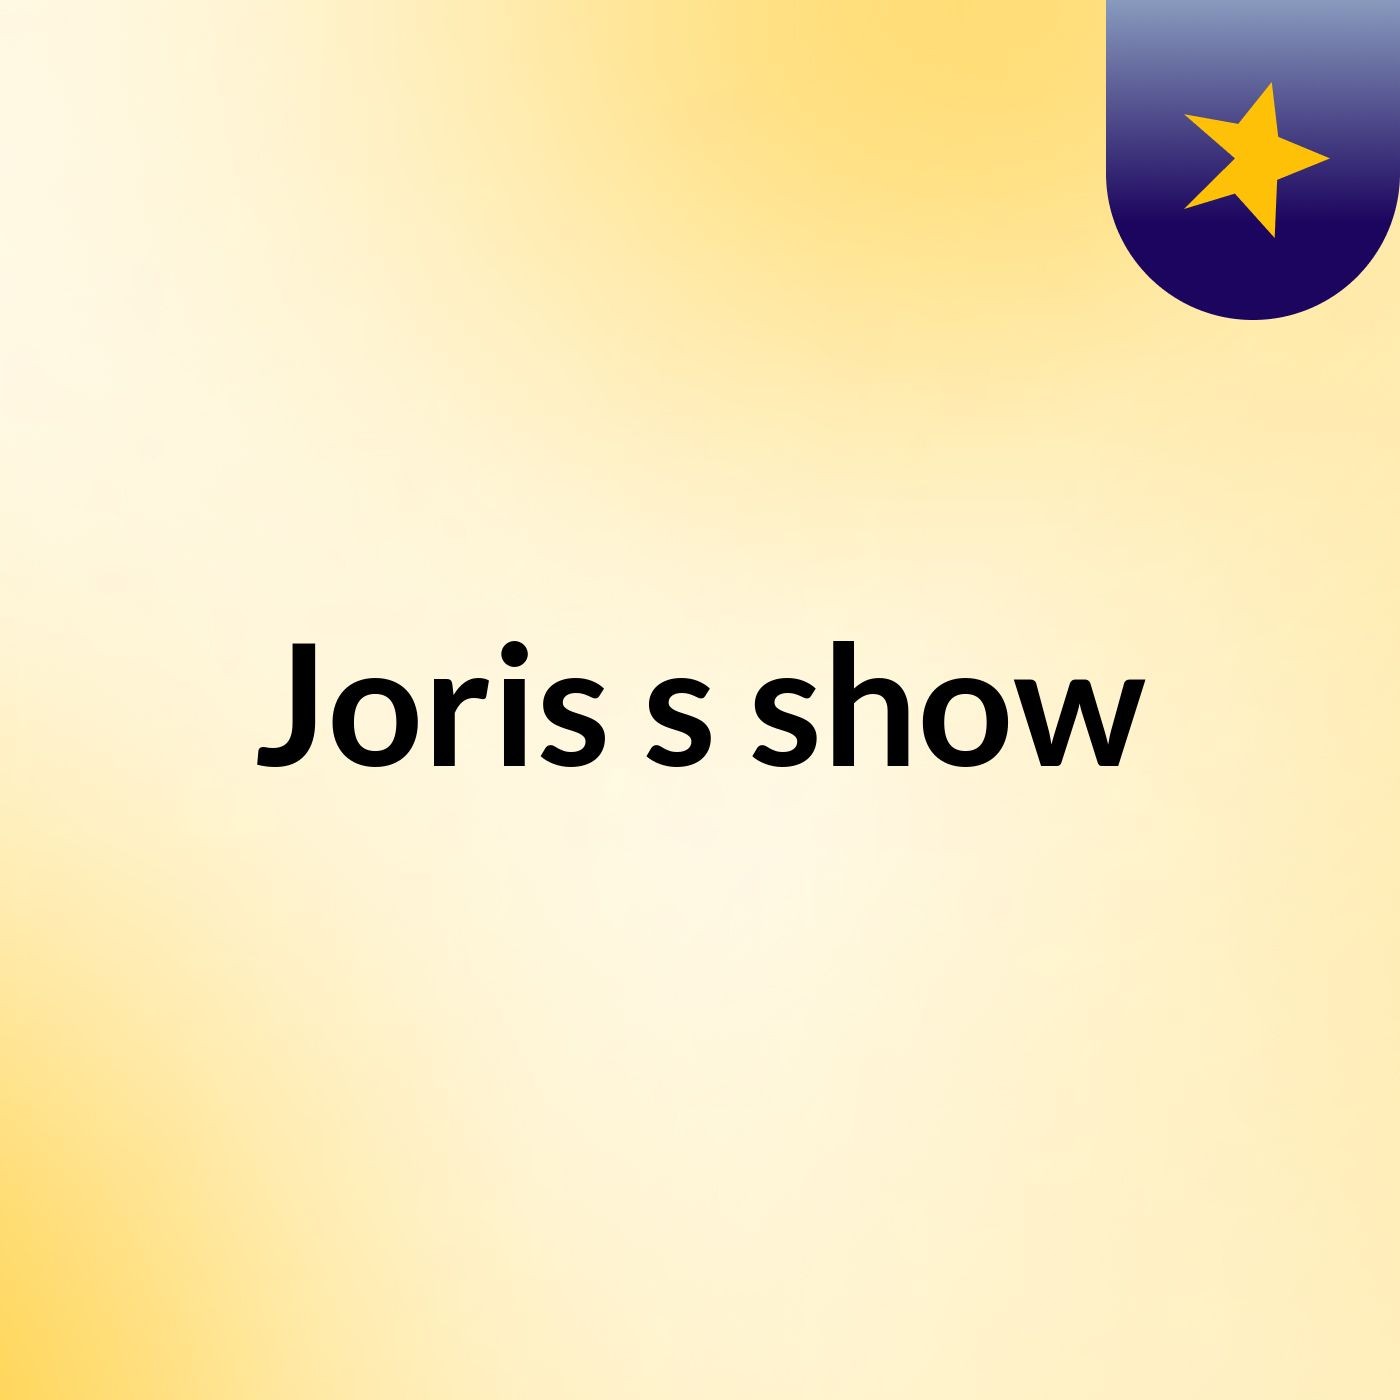 Joris's show